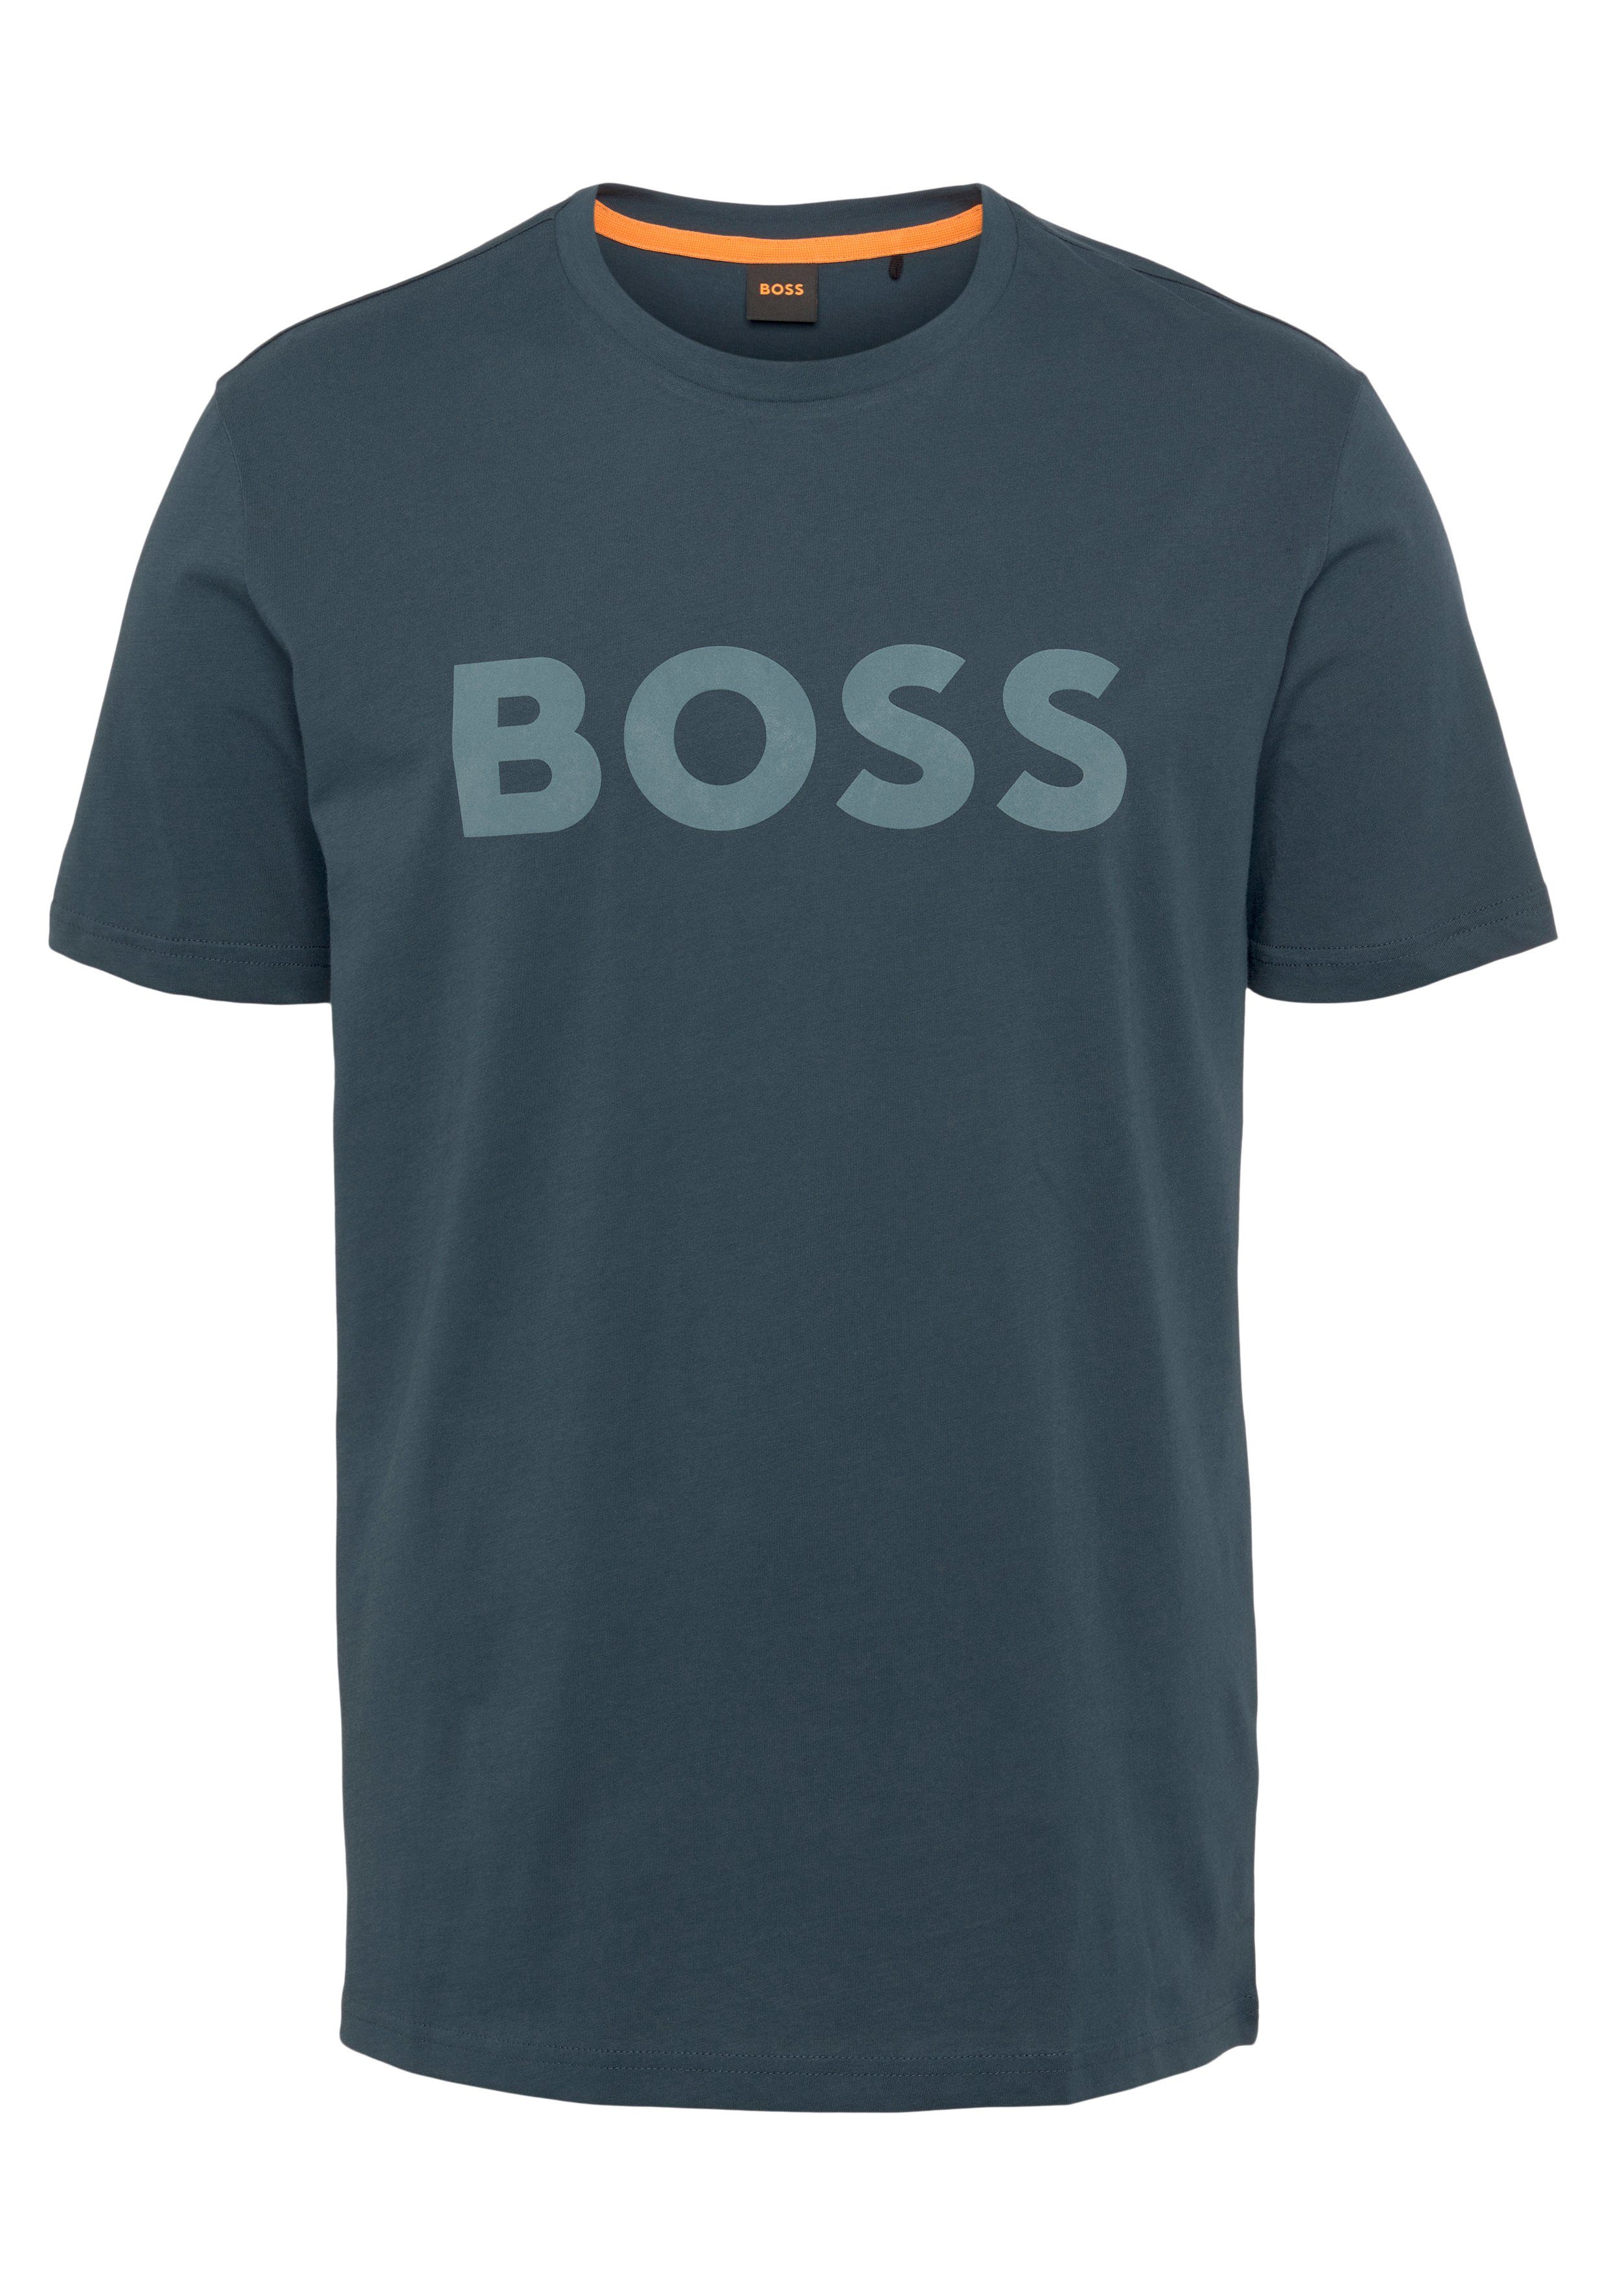 BOSS ORANGE T-Shirt Thinking 1 10246016 01 mit großem BOSS Druck auf der Brust Open Green388